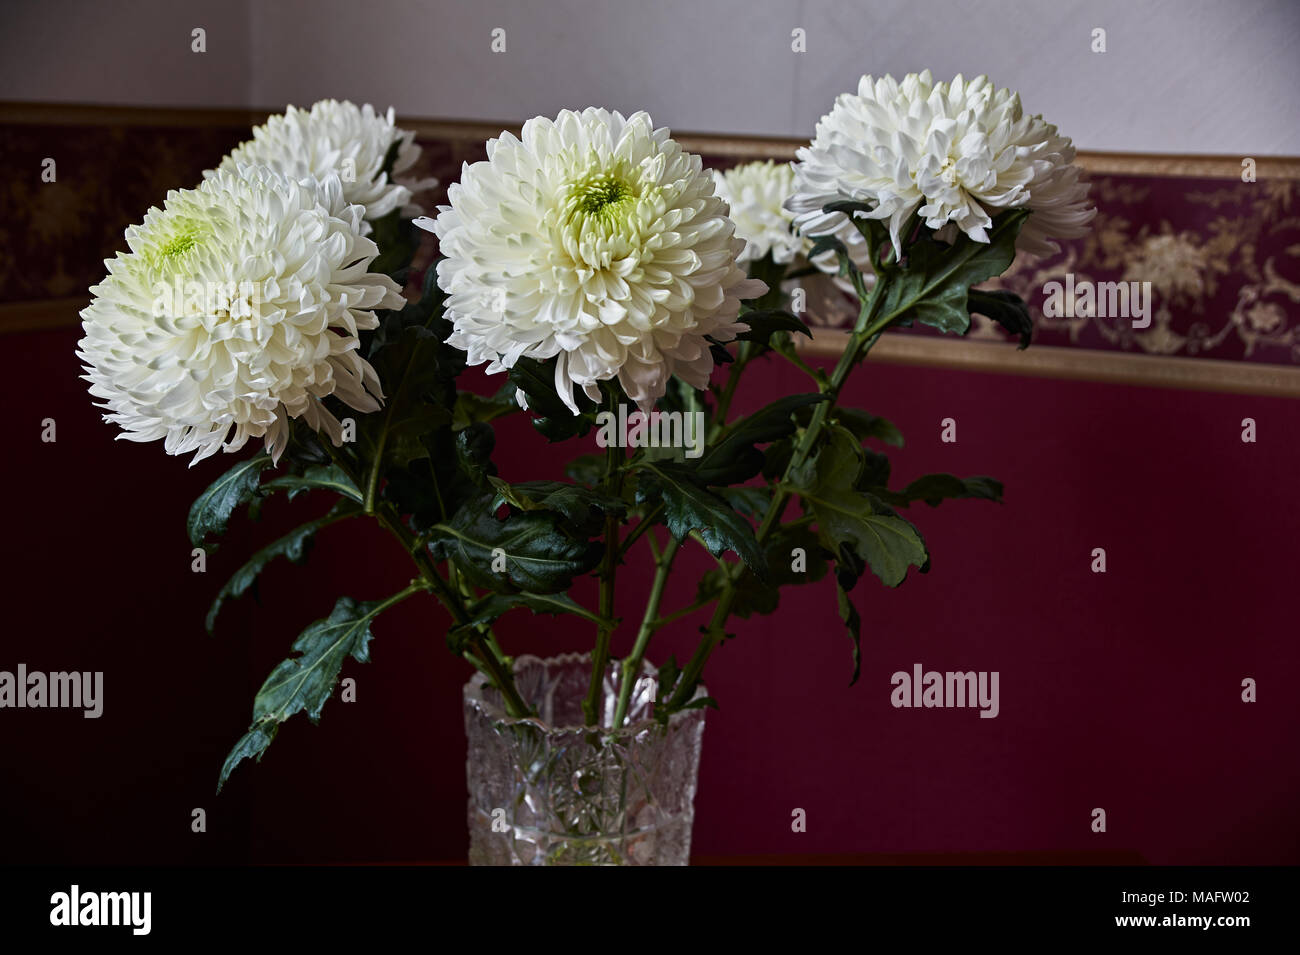 Weiße Chrysanthemen von sphärischen Form mit grüner Kern in einem Kristall Vase stand auf einem Tisch. Russland, Moskau, Urlaub, Geschenk, Stimmung, Natur, Blume, Stockfoto